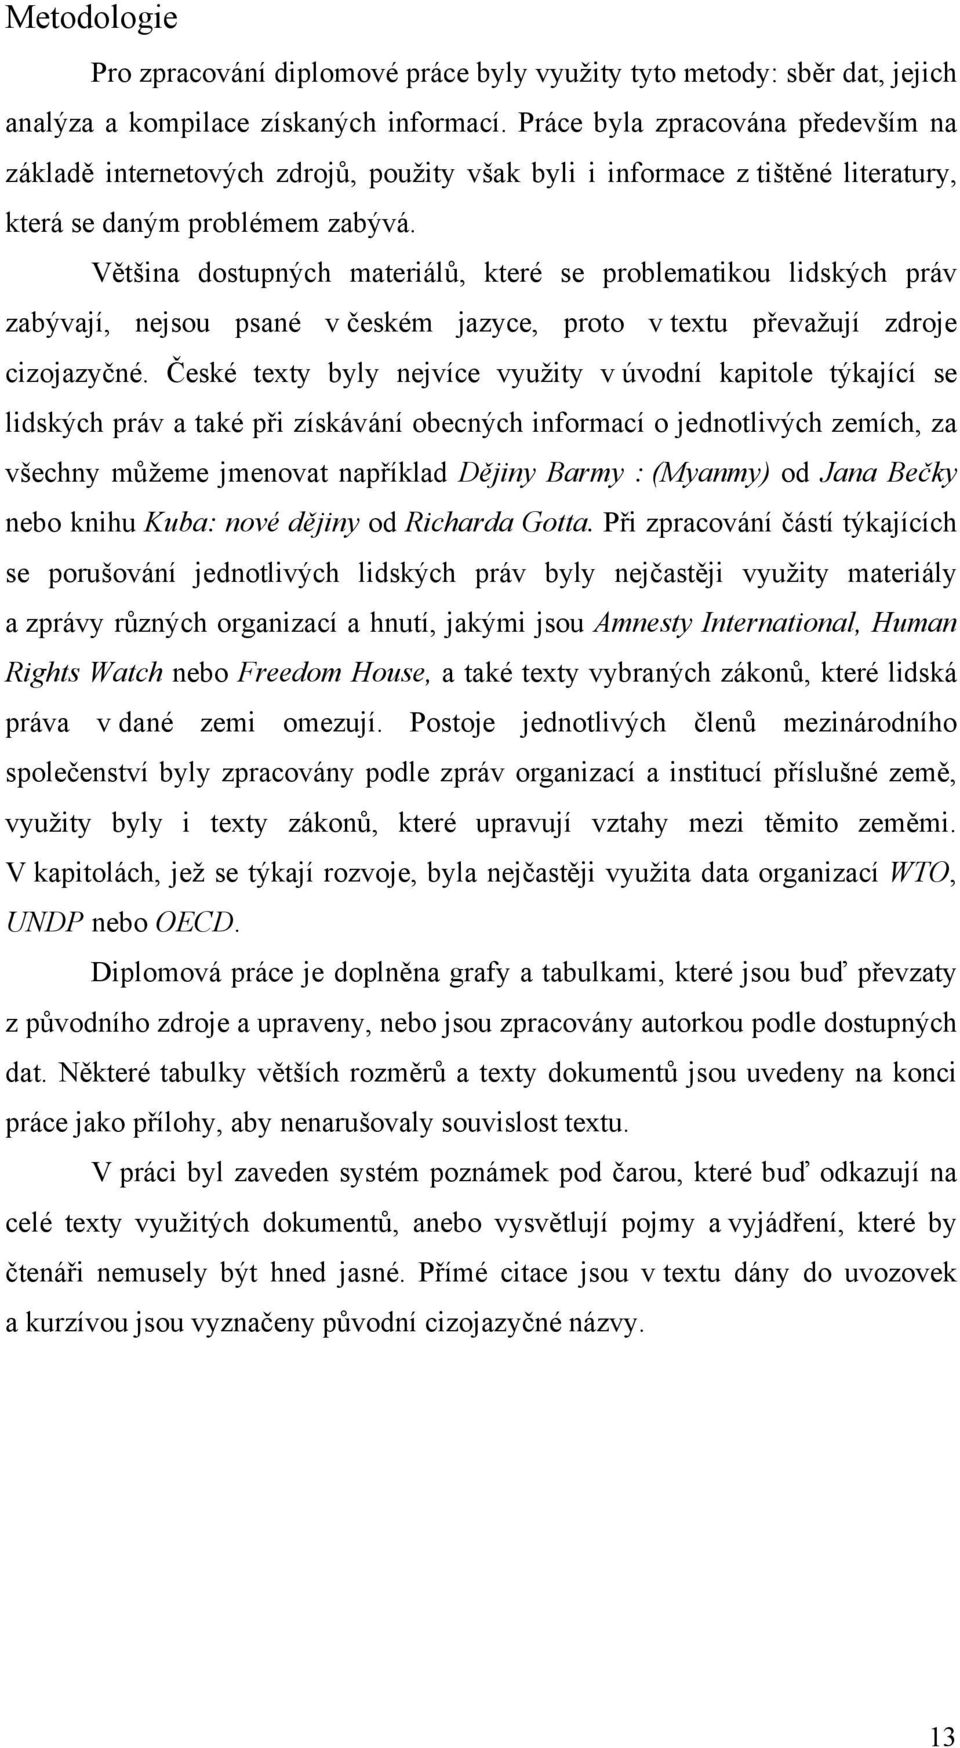 Většina dostupných materiálů, které se problematikou lidských práv zabývají, nejsou psané v českém jazyce, proto v textu převažují zdroje cizojazyčné.